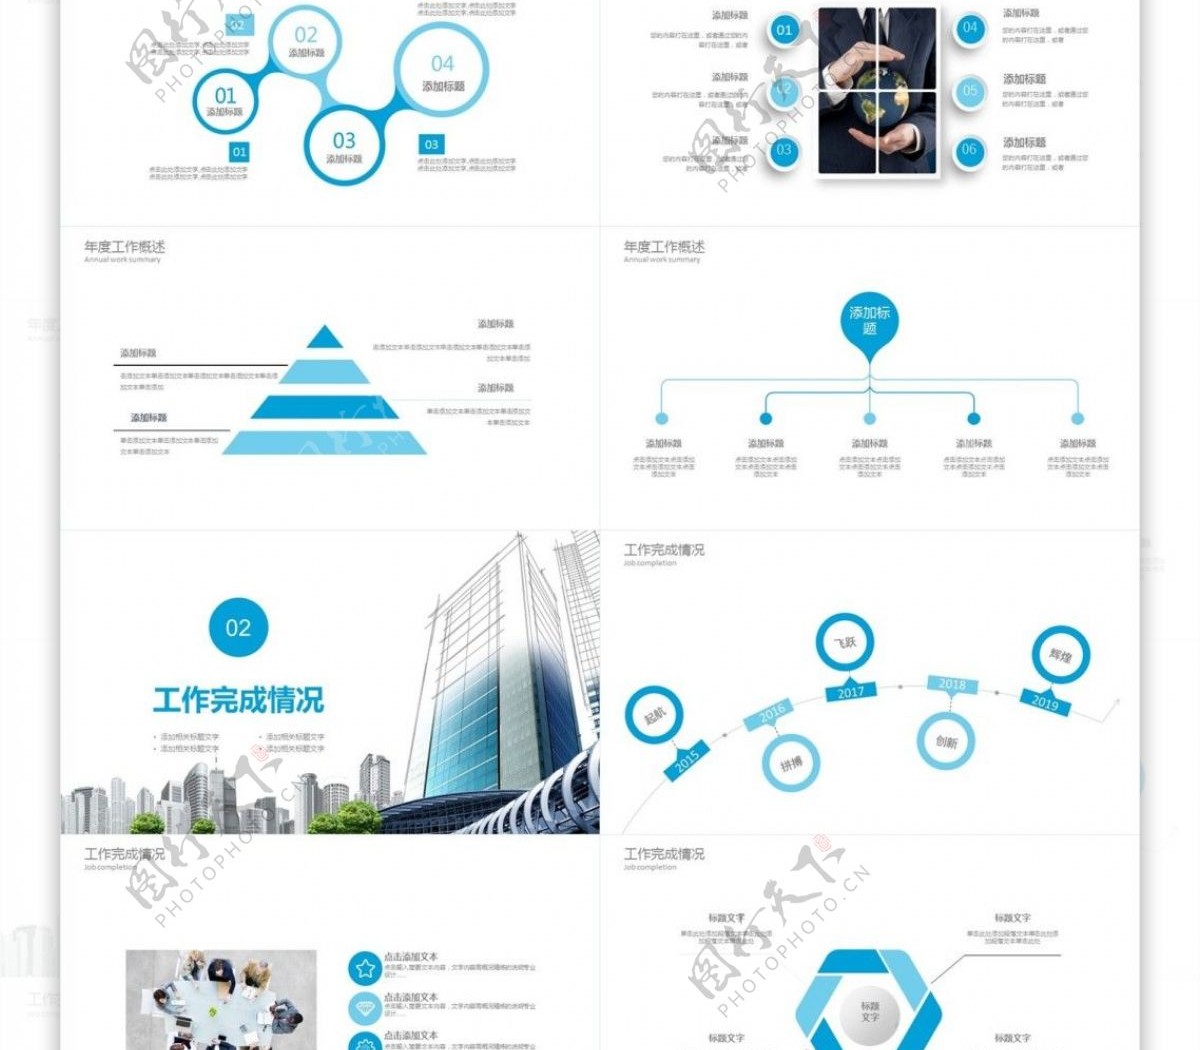 2019蓝色时尚城市建筑规划PPT模板